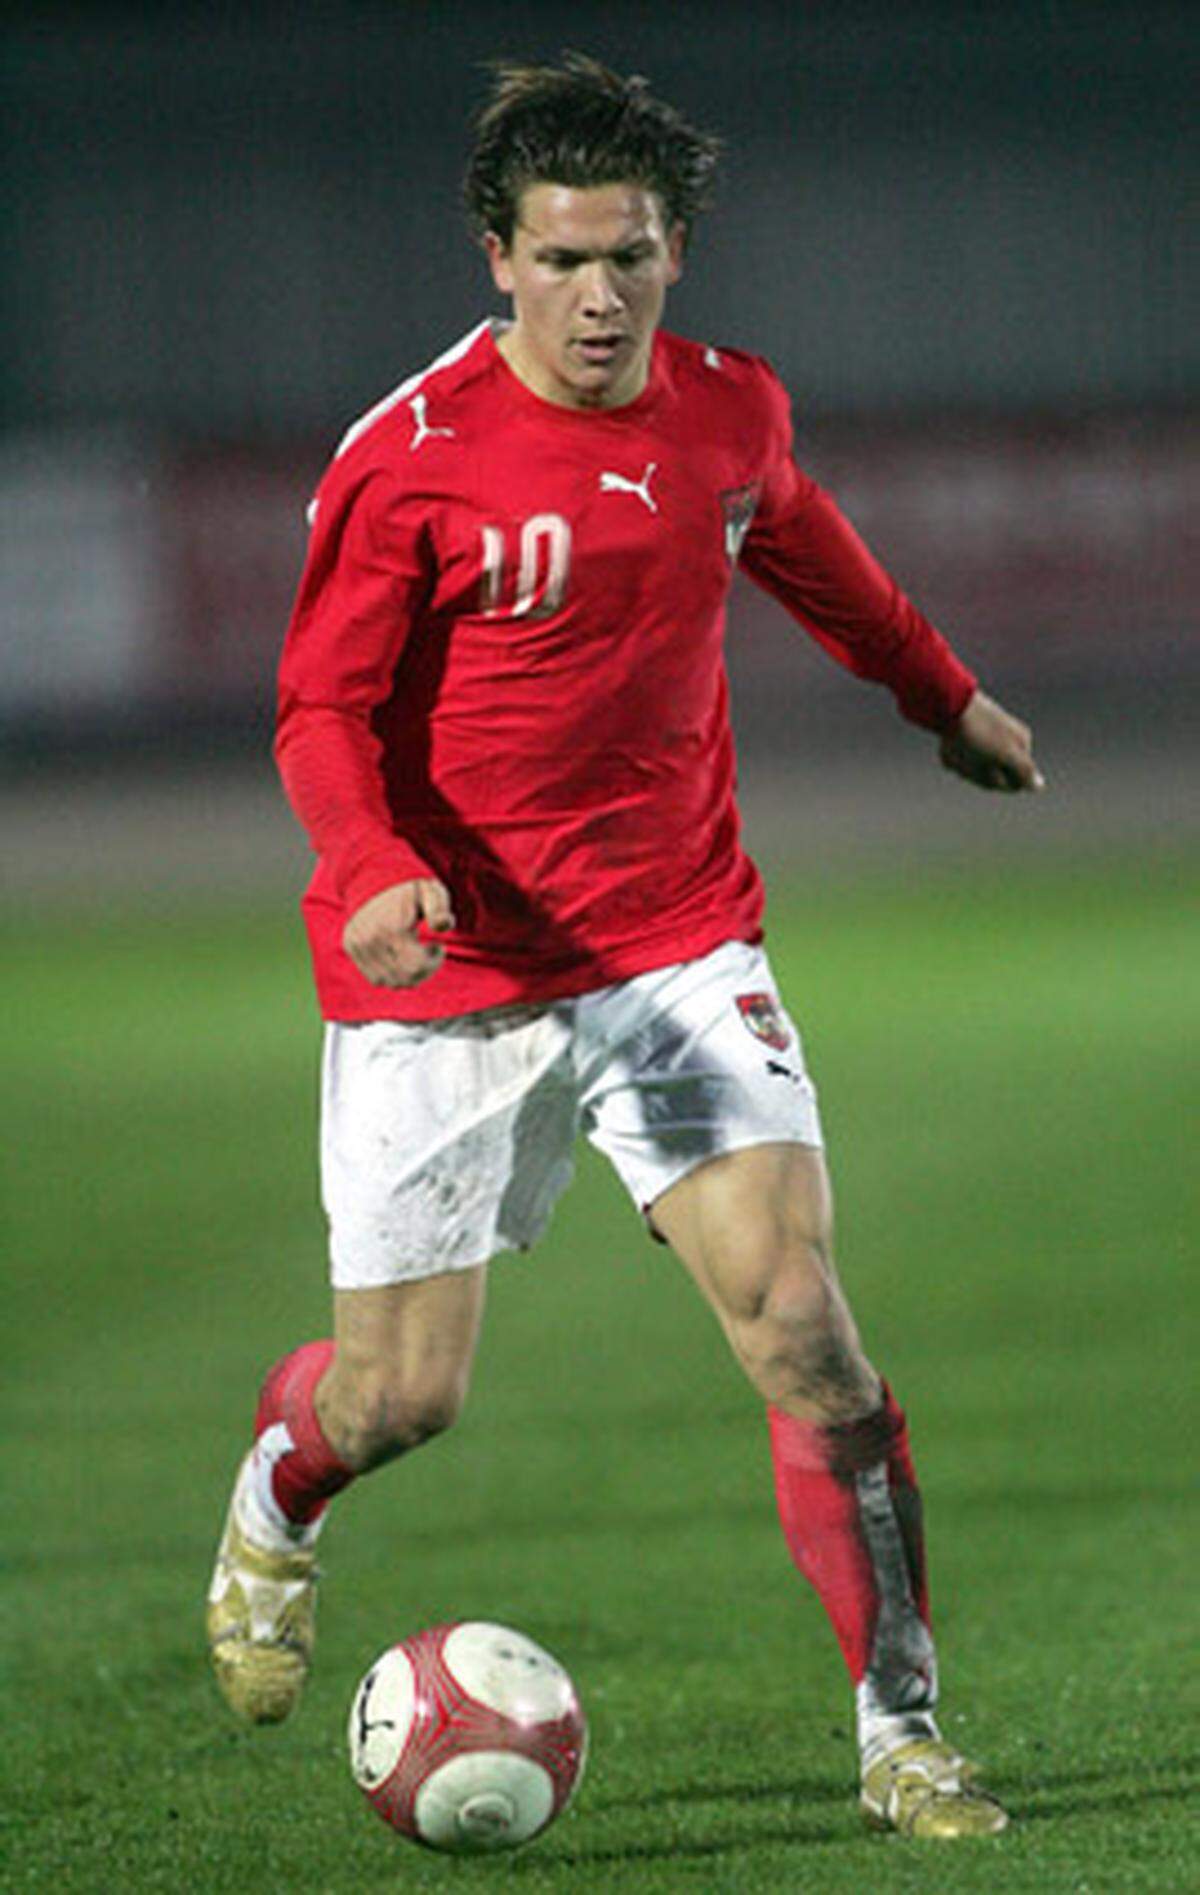 Für Kienzl besteht aber ebenso wie für Marko Stankovic noch Hoffnung. Der Offensivspieler debütierte im November 2008 unter Teamchef Karel Brückner, als er beim 2:4 gegen die Türkei in der 70. Minute eingewechselt wurde. Seitdem ist es still geworden um den talentierten Niederösterreicher, der derzeit in der italienischen Serie B harte Zeiten erlebt.